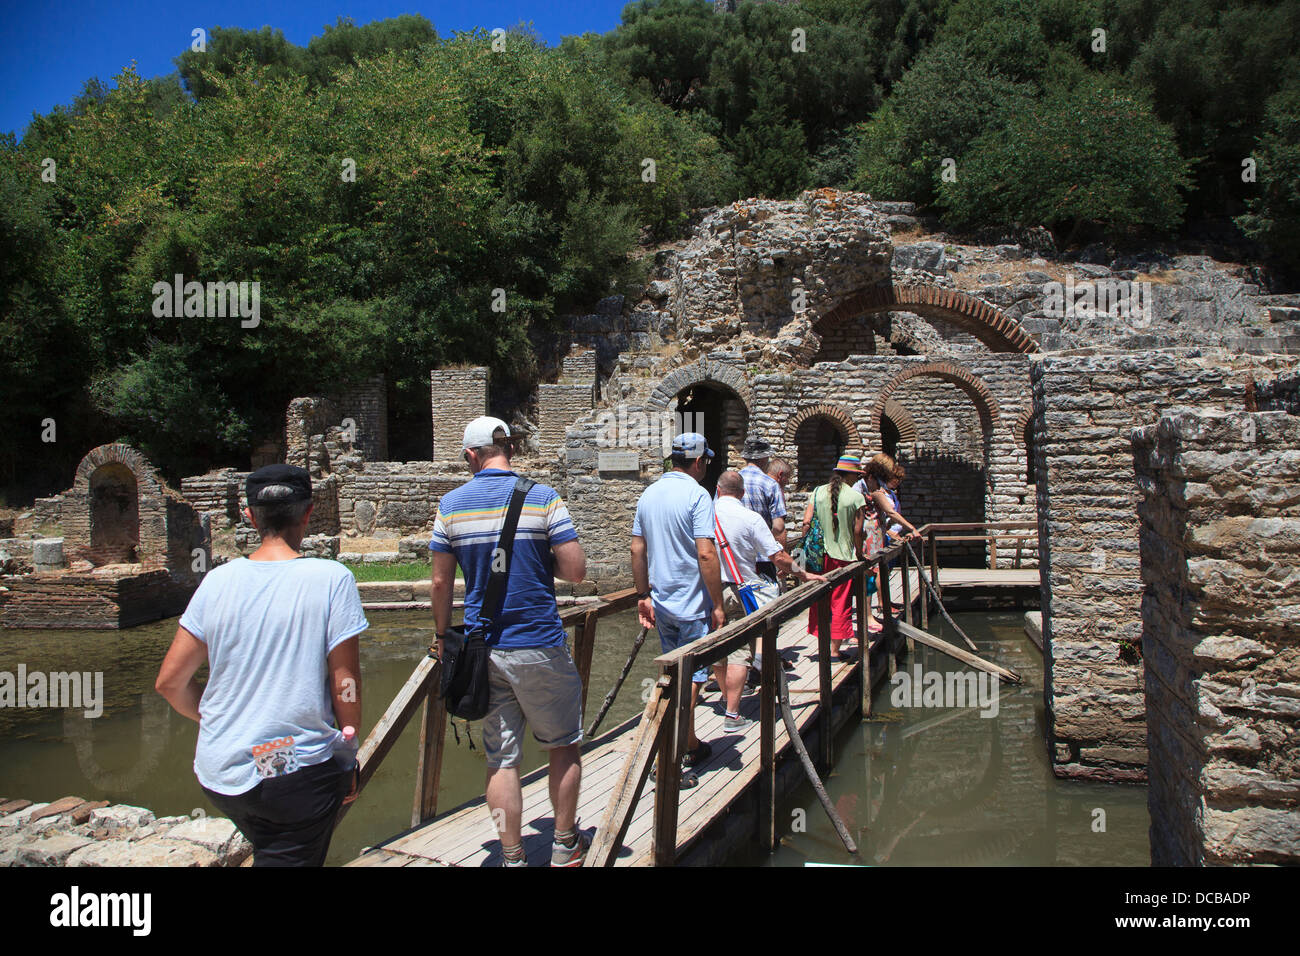 Les touristes se promenant dans le reste de l'antiquité grecque et romaine à l'Albanie Butrint Banque D'Images